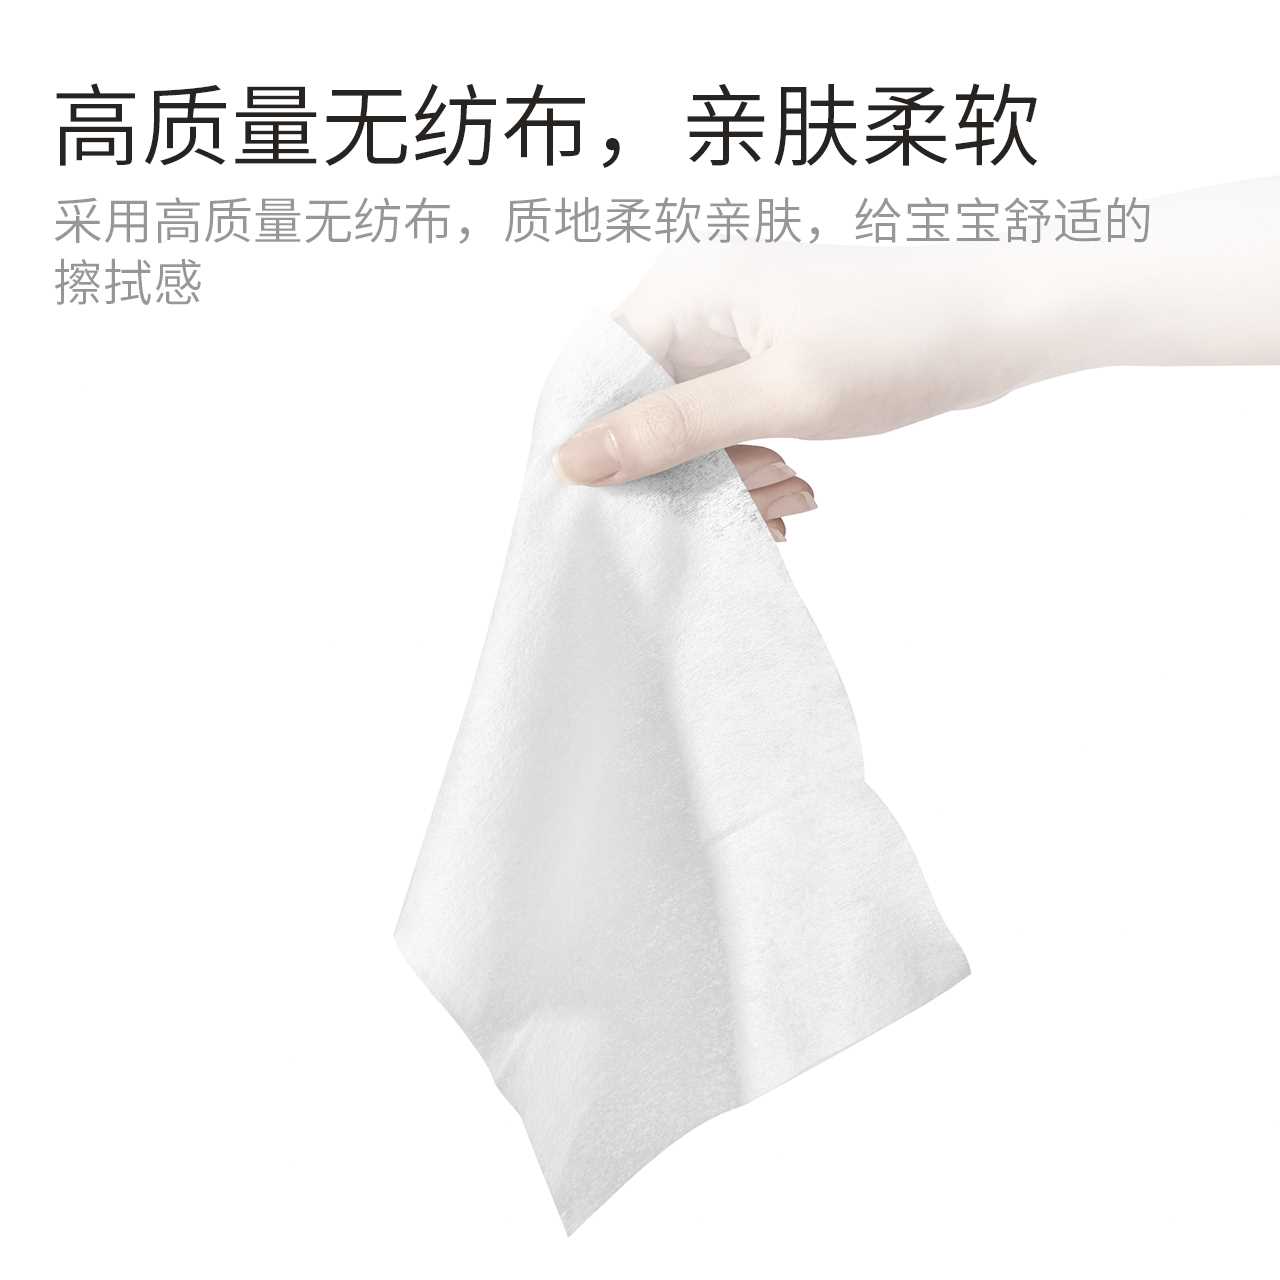 植护湿巾婴儿专用湿纸巾大包家庭实惠装特价宝宝手口小包便携随身